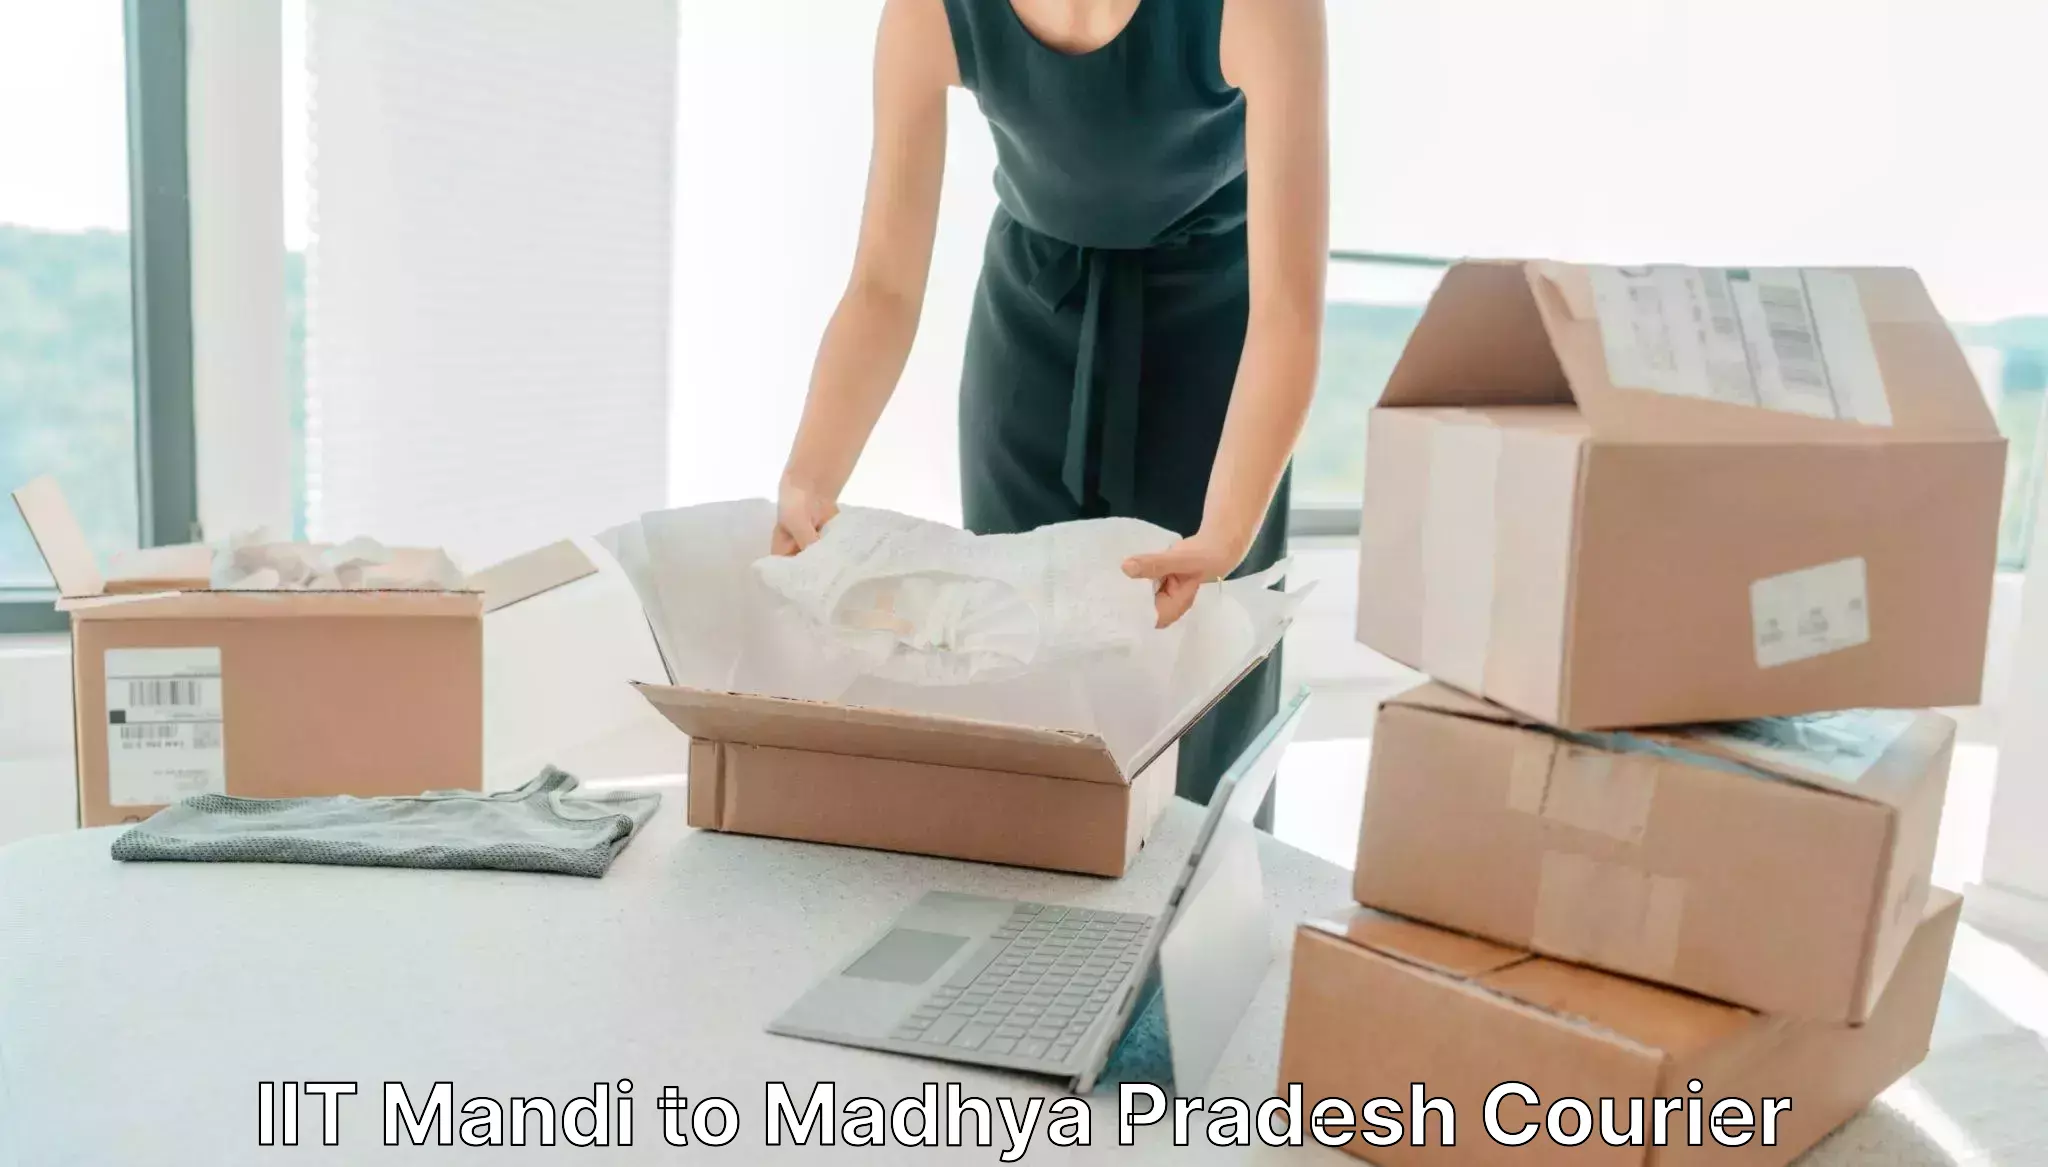 Custom courier packages IIT Mandi to Madhya Pradesh